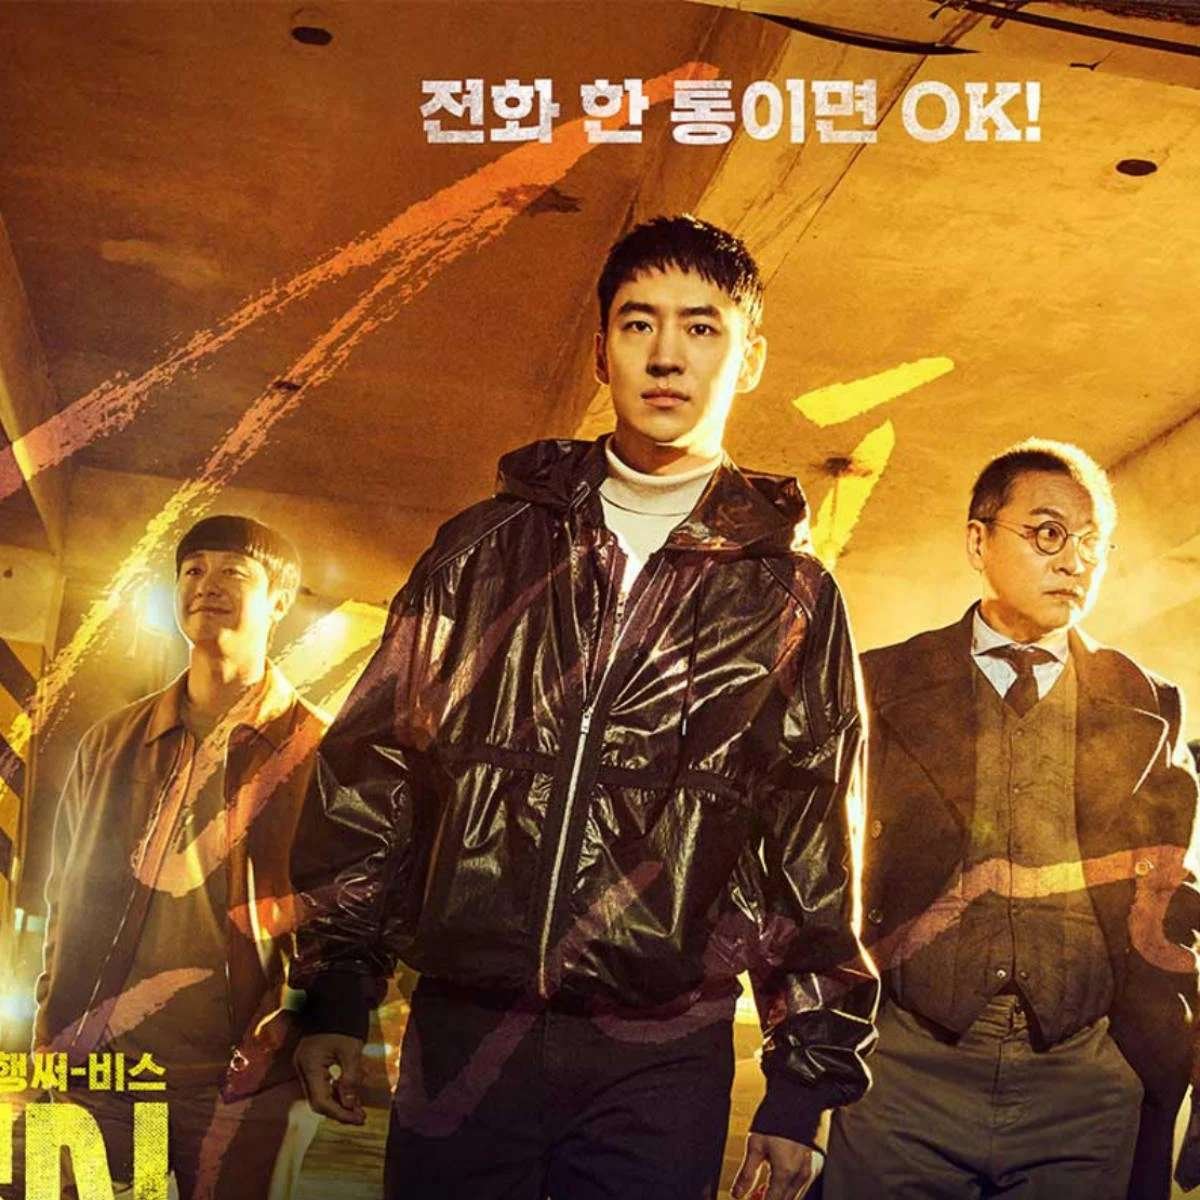 مسلسلات كورية لشهر فبراير 2023 منتظرة : مواسم جديدة و اعمال قوية